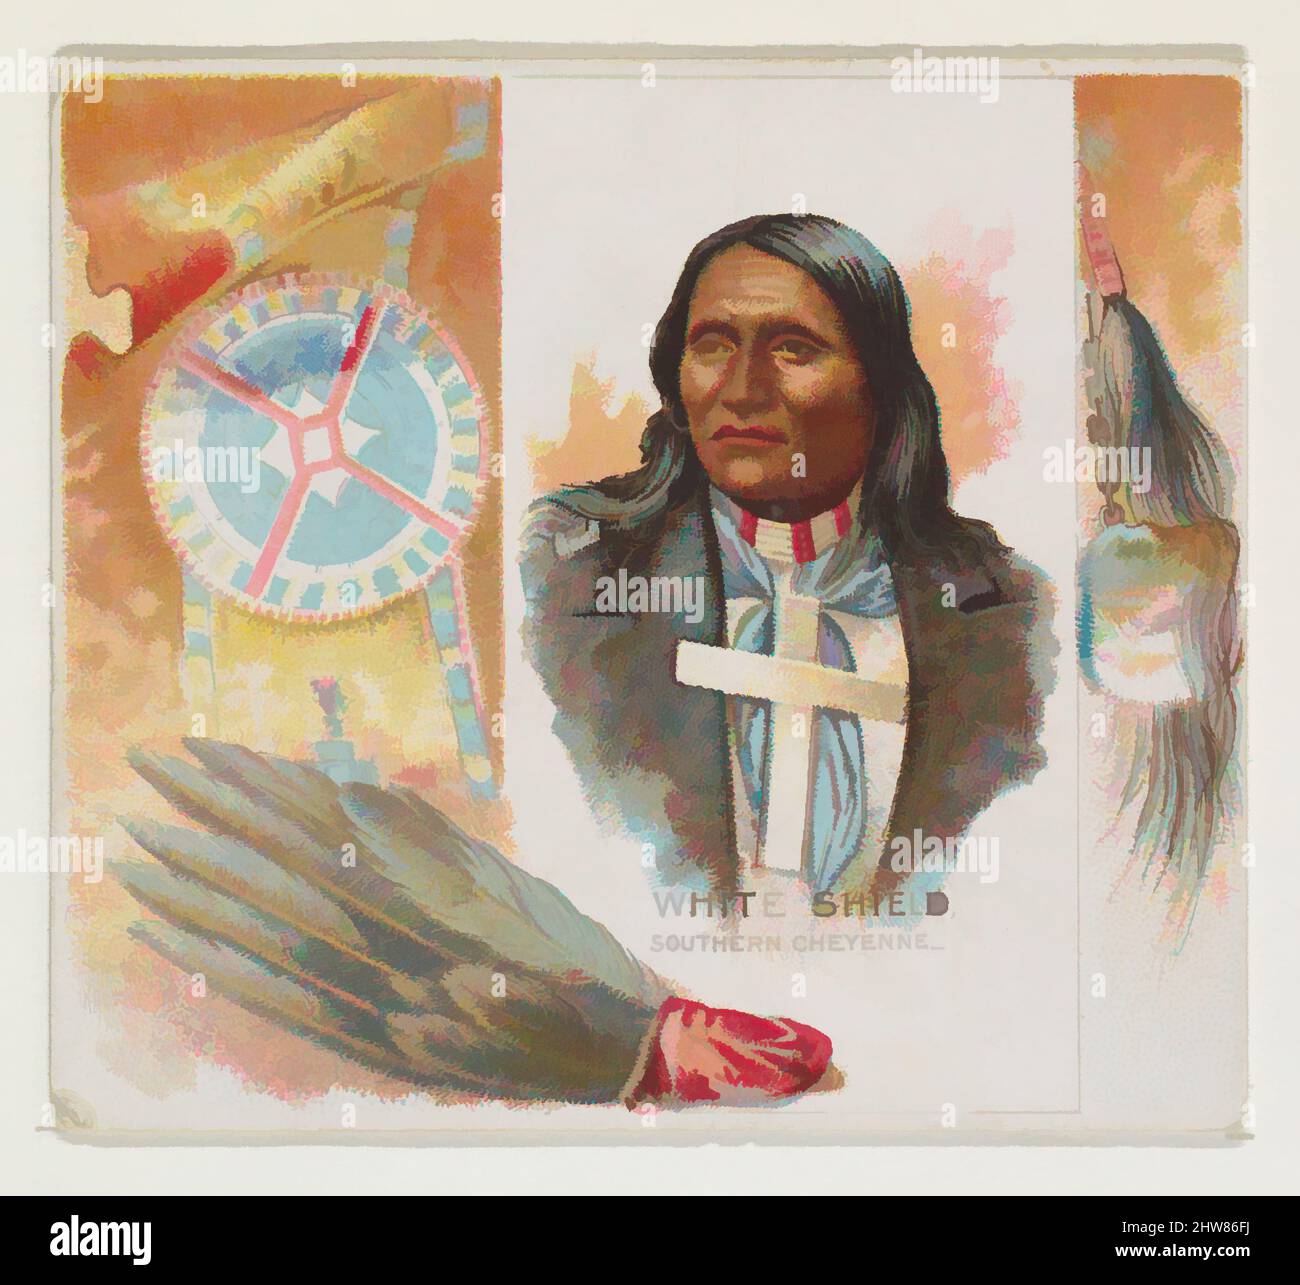 Art inspired by White Shield, Southern Cheyenne, from the American Indian Chiefs series (N36) for Allen & Ginter Cigarettes, 1888, Commercial color lithograph, Sheet: 2 7/8 x 3 1/4 in. (7,3 x 8,3 cm), Handelskarten aus der Serie 'American Indian Chiefs' (N36), die 1888 in einem Set herausgegeben wurde, klassische Werke, die von Artotop mit einem Schuss Modernität modernisiert wurden. Formen, Farbe und Wert, auffällige visuelle Wirkung auf Kunst. Emotionen durch Freiheit von Kunstwerken auf zeitgemäße Weise. Eine zeitlose Botschaft, die eine wild kreative neue Richtung verfolgt. Künstler, die sich dem digitalen Medium zuwenden und die Artotop NFT erschaffen Stockfoto